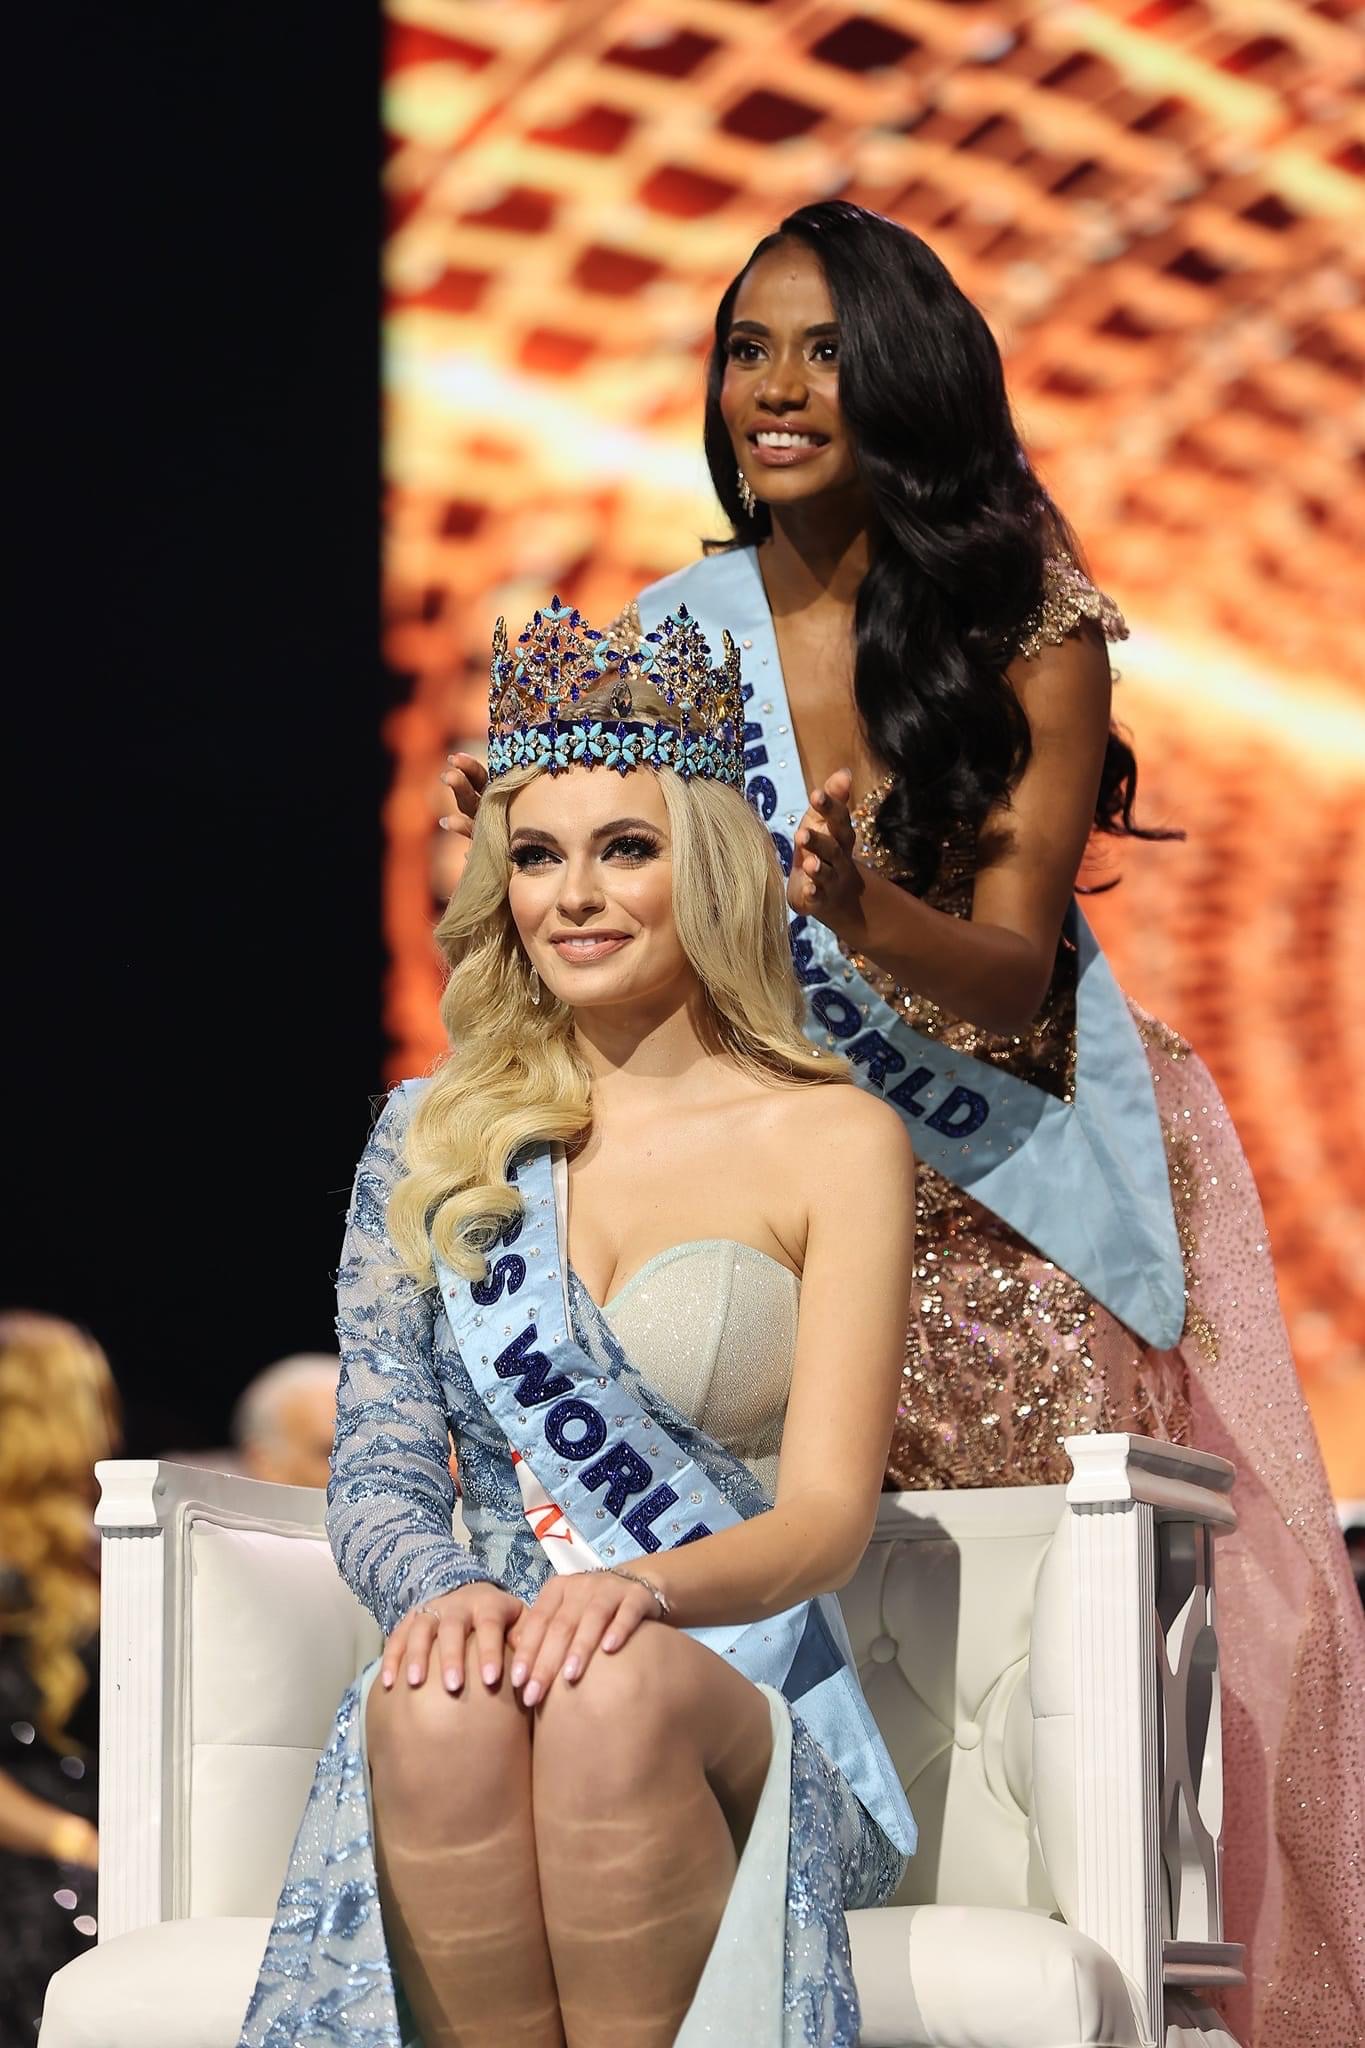 Đỗ Hà nhận xét Tân Miss World: Khá đẹp nhưng không nổi bật ở các vòng thi phụ nên hơi bất ngờ về kết quả - Ảnh 6.